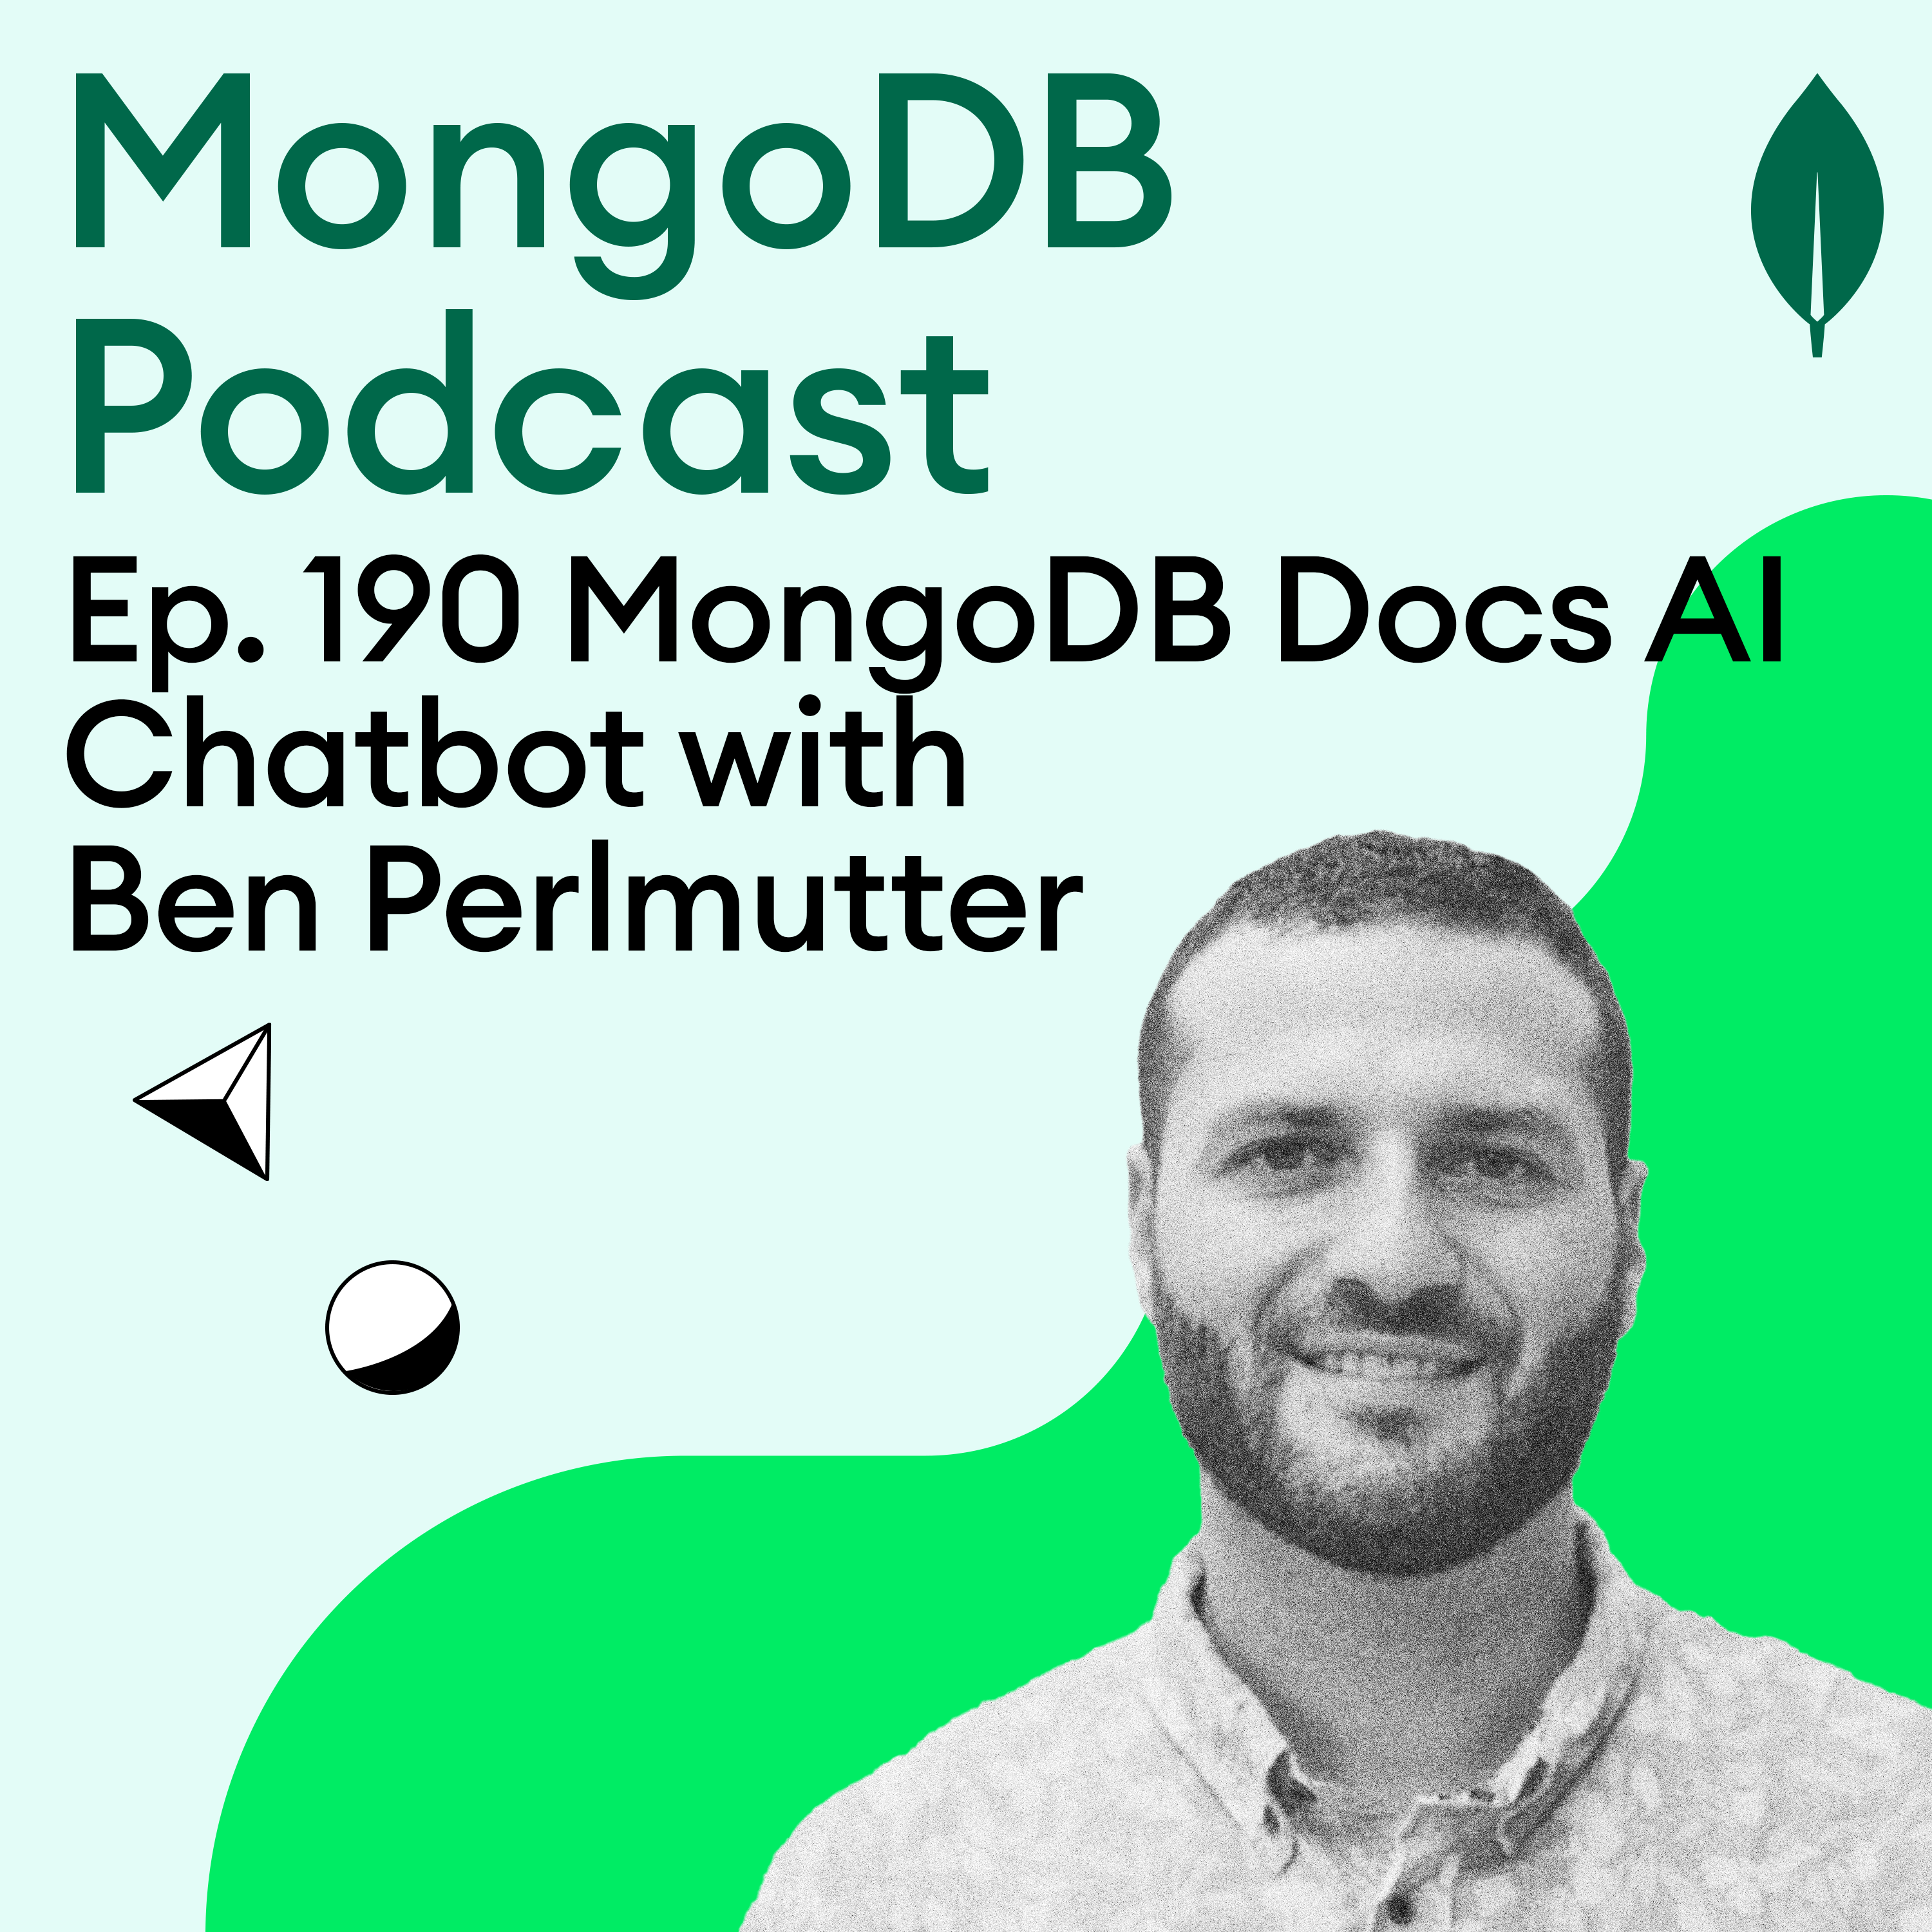 Ep. 190 Building the MongoDB Docs AI Chatbot